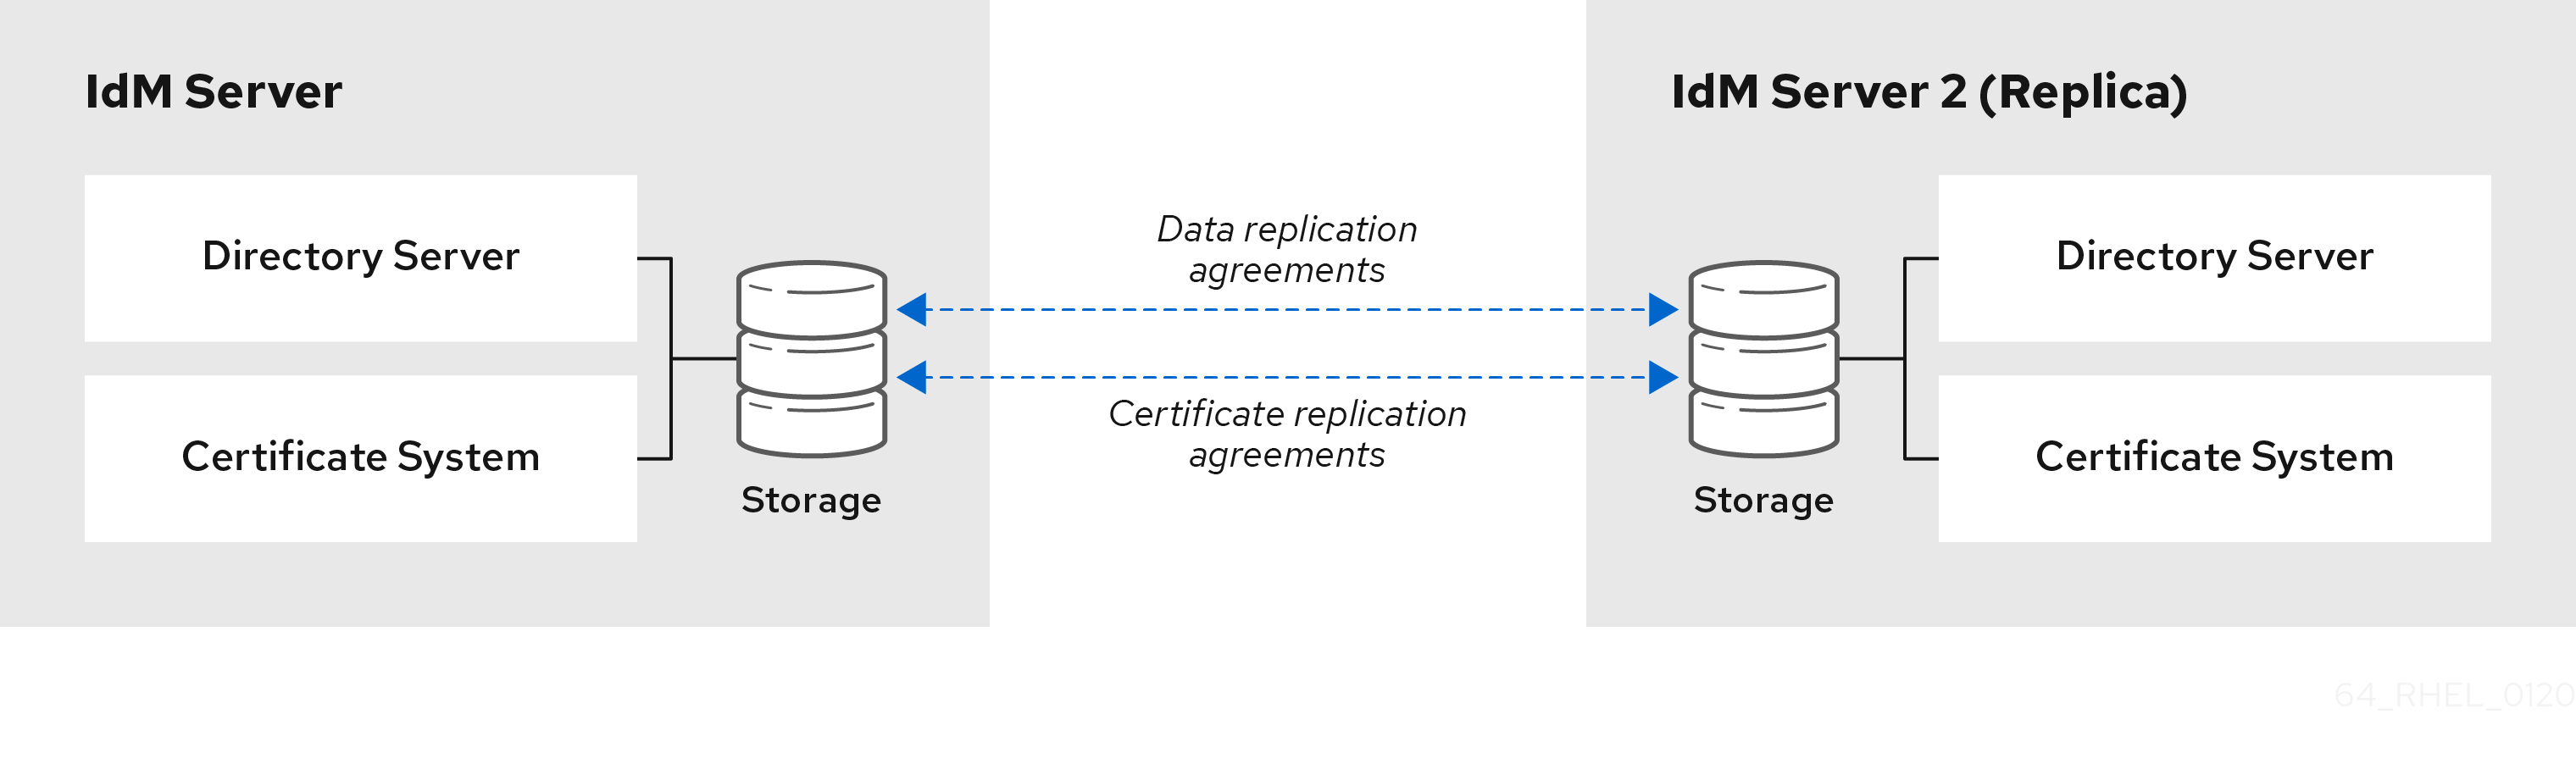 サーバー 2 台の間に 2 つのレプリカ合意があるイメージ: Directory Server データベースに関連するデータのレプリカ合意と、Certificate System データに関連する証明書レプリカ合意